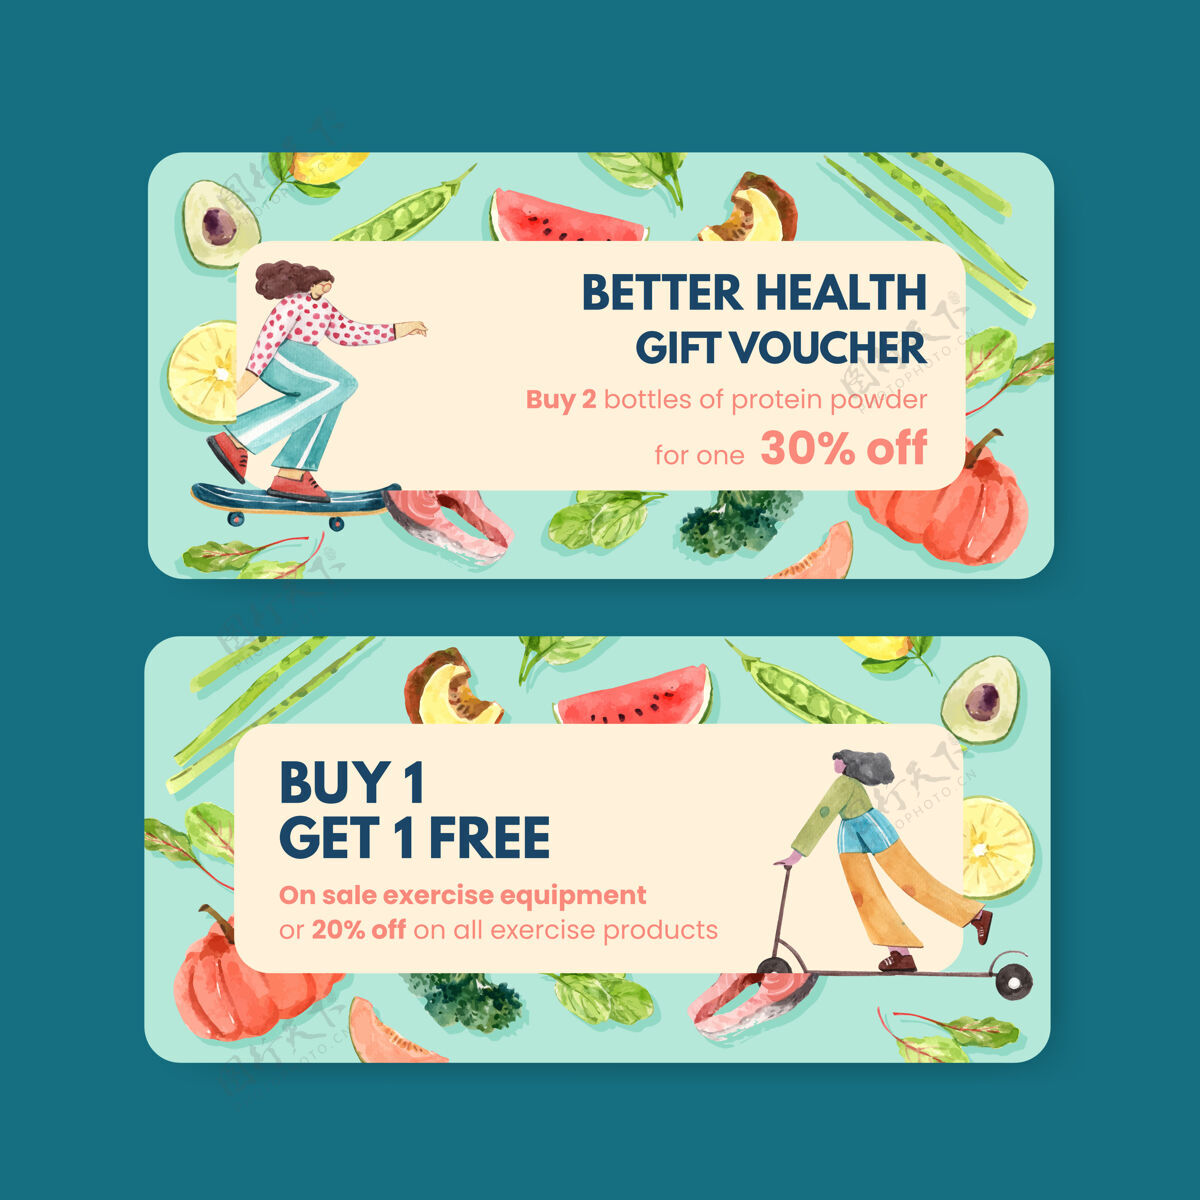 模板水彩风格的世界卫生日优惠券模板水果护理生活方式